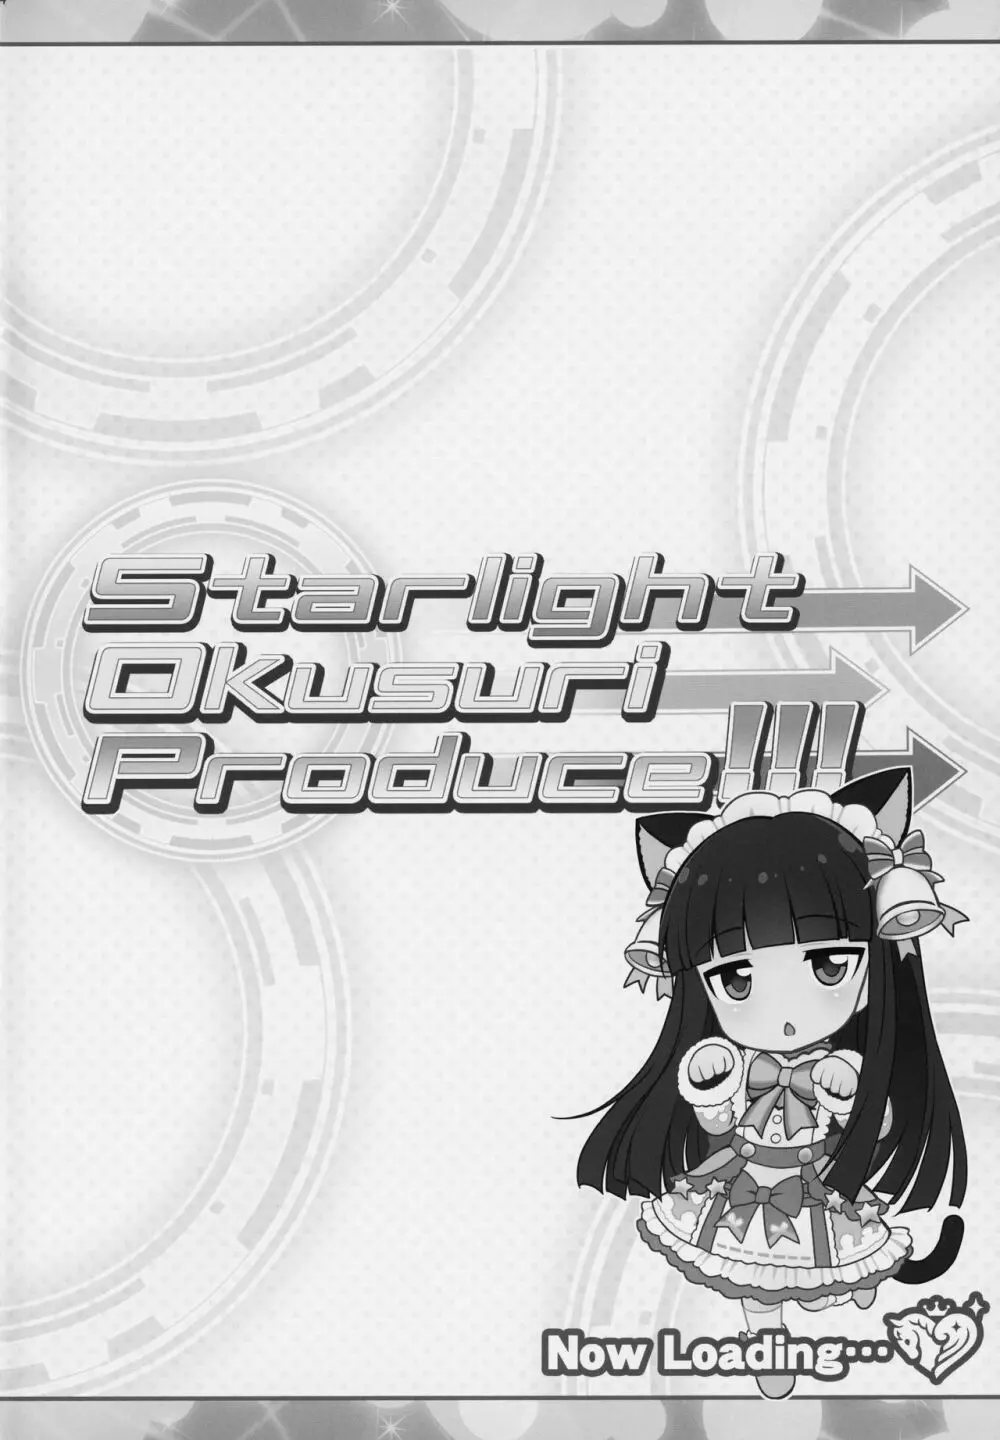 Starlight Okusuri Produce!!! - page3